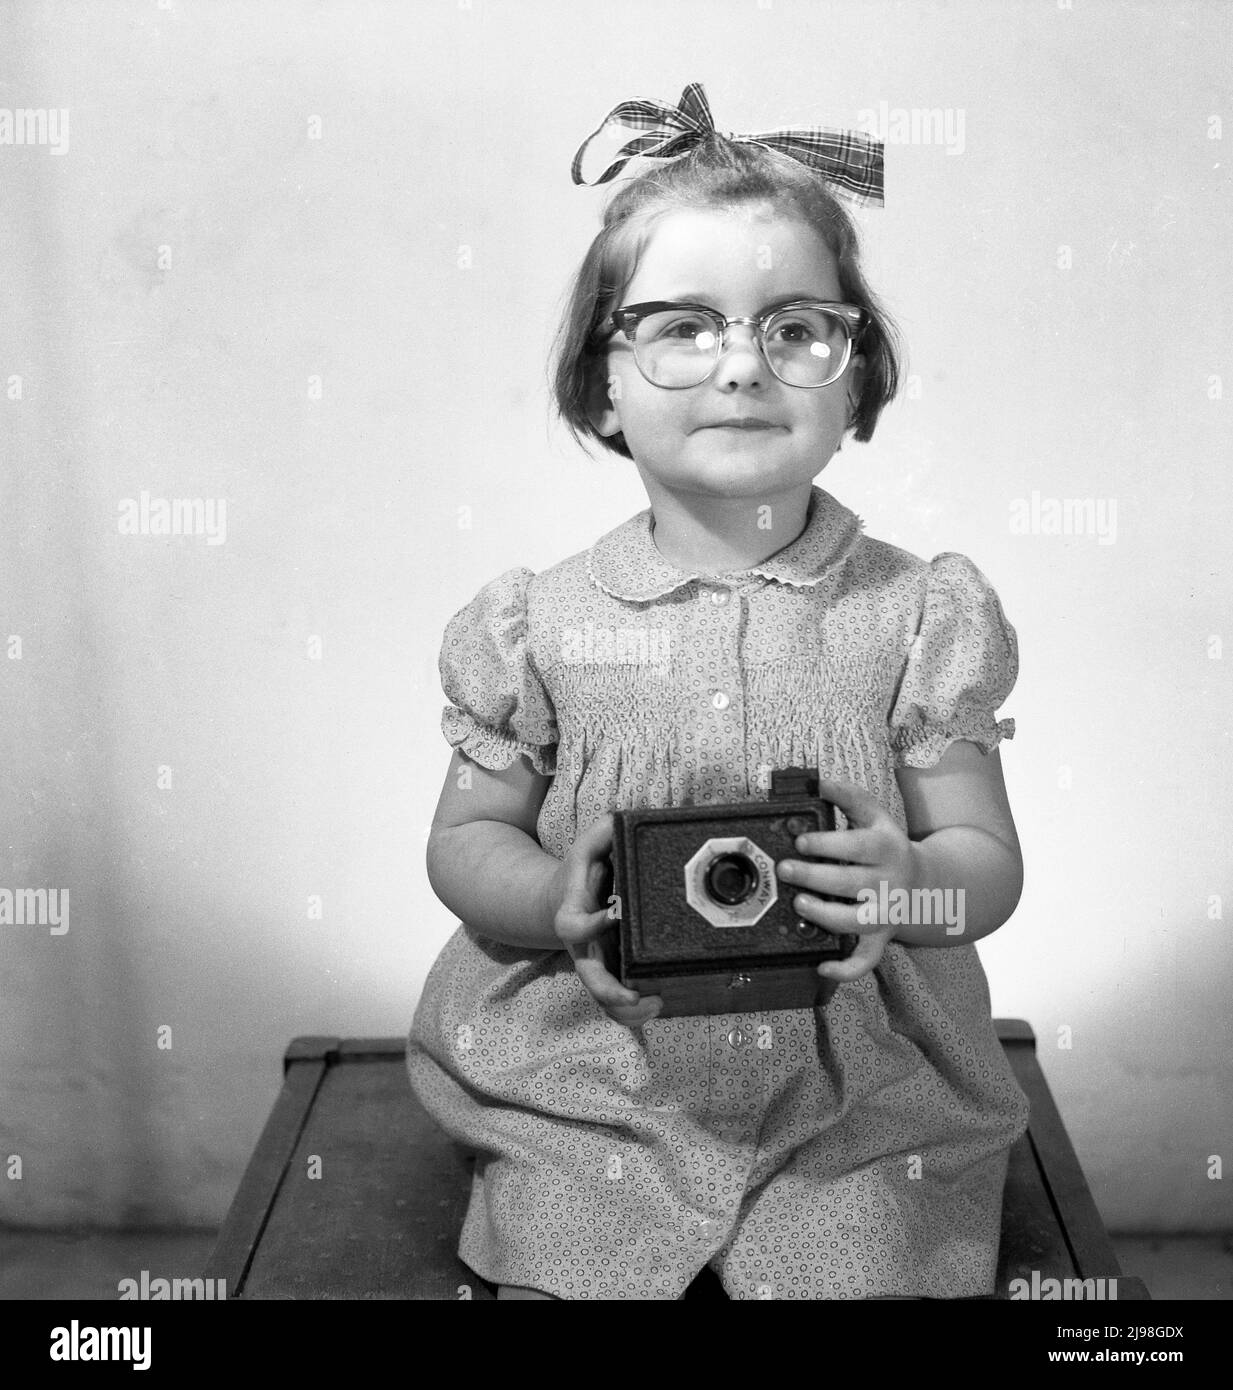 1963, historique, photo de studio, une jeune fille avec un ruban dans ses cheveux assis sur un tabouret pour sa photo, portant les vitres de sa mère et tenant un appareil photo de boîte Conway, Angleterre, Royaume-Uni. Banque D'Images